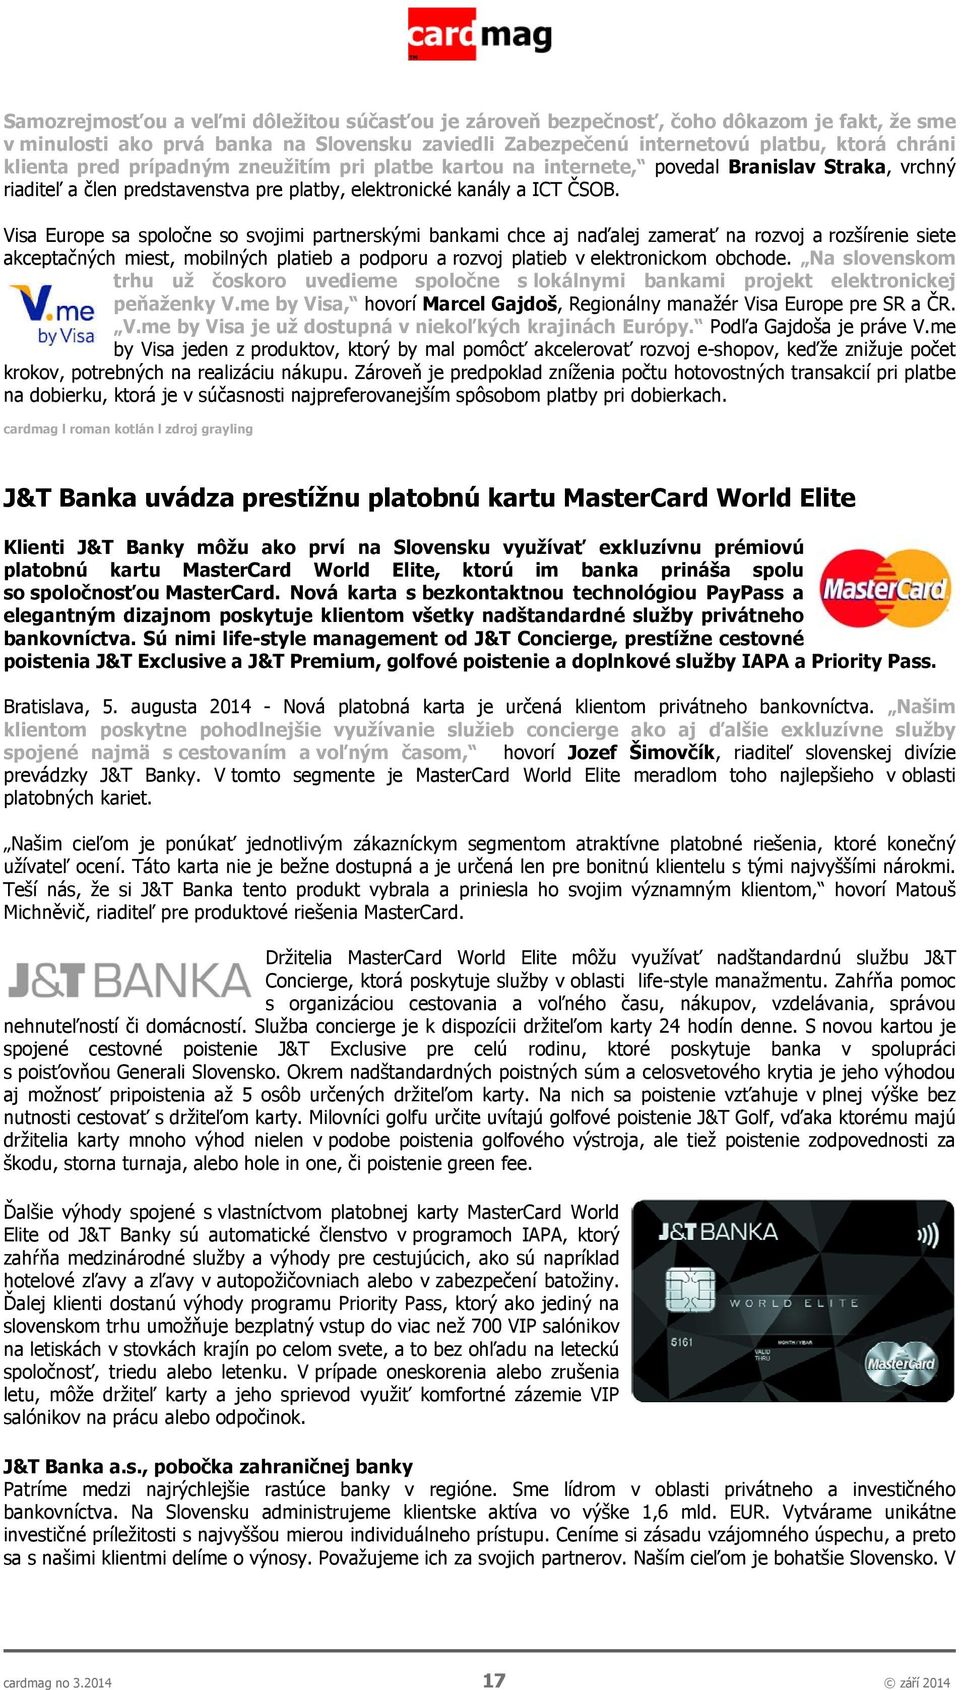 Visa Europe sa spoločne so svojimi partnerskými bankami chce aj naďalej zamerať na rozvoj a rozšírenie siete akceptačných miest, mobilných platieb a podporu a rozvoj platieb v elektronickom obchode.